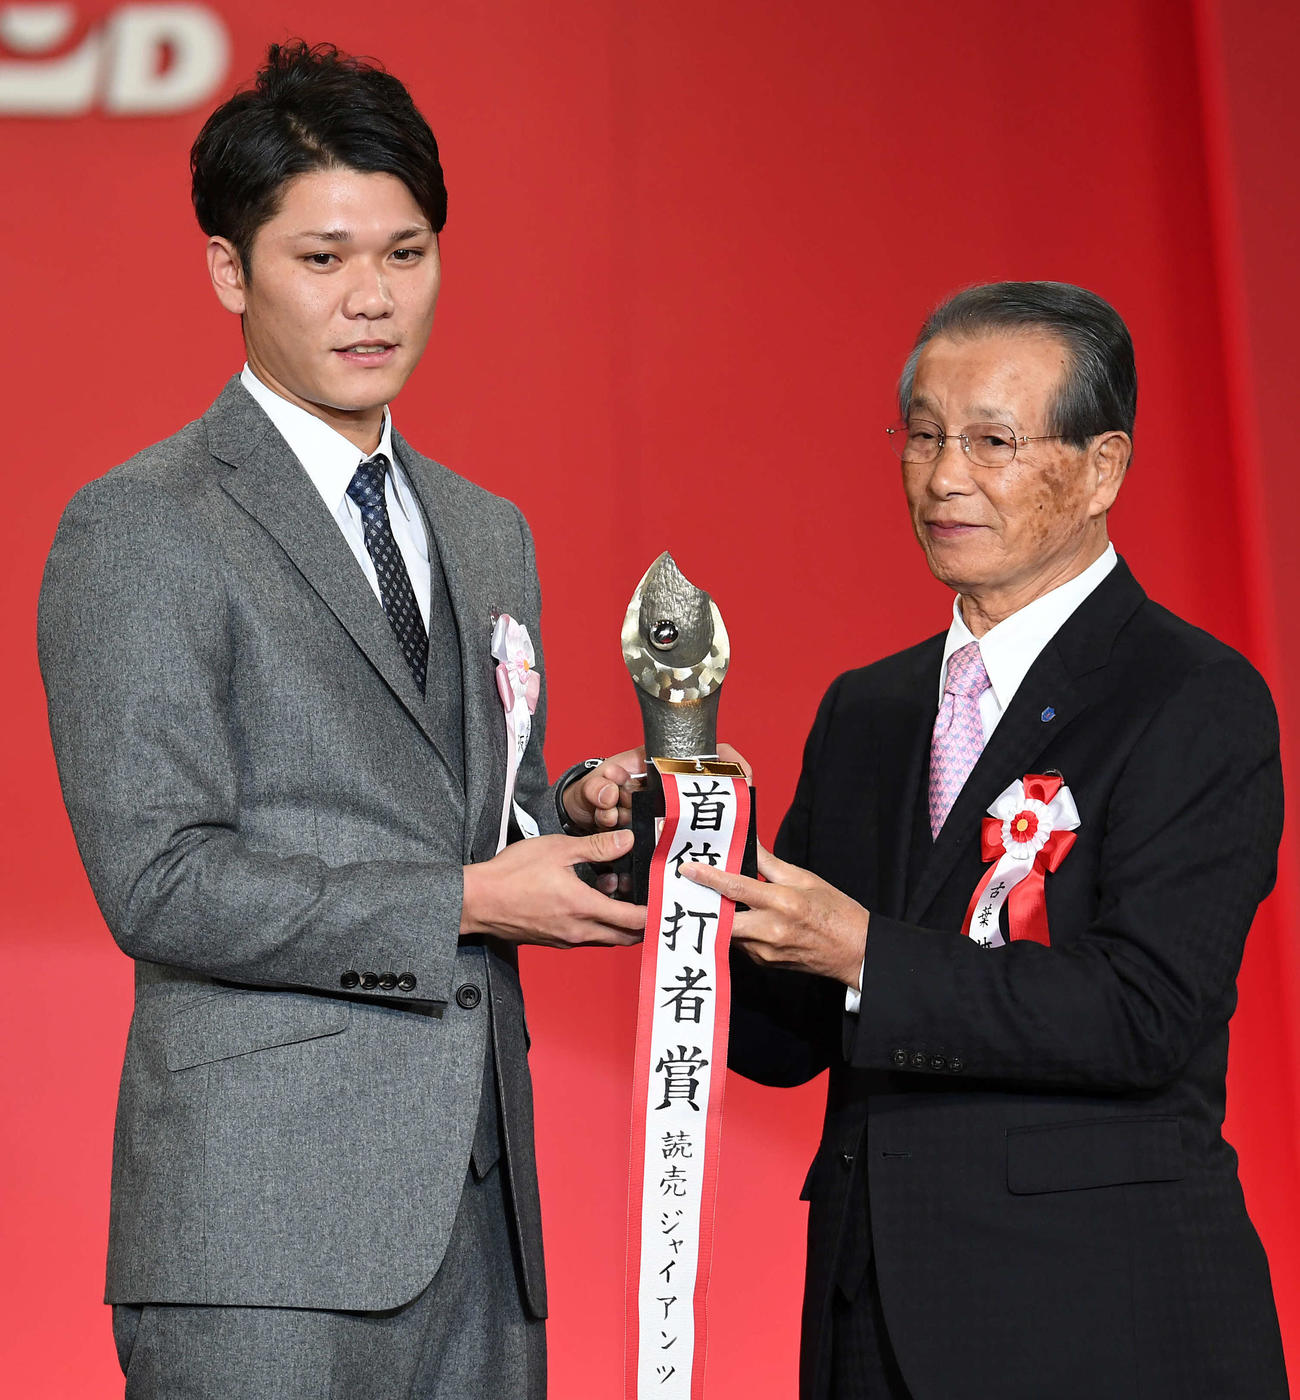 2016年11月、「NPB AWARDS 2016」で巨人坂本勇人（左）に首位打者賞のトロフィーを渡す古葉竹識さん